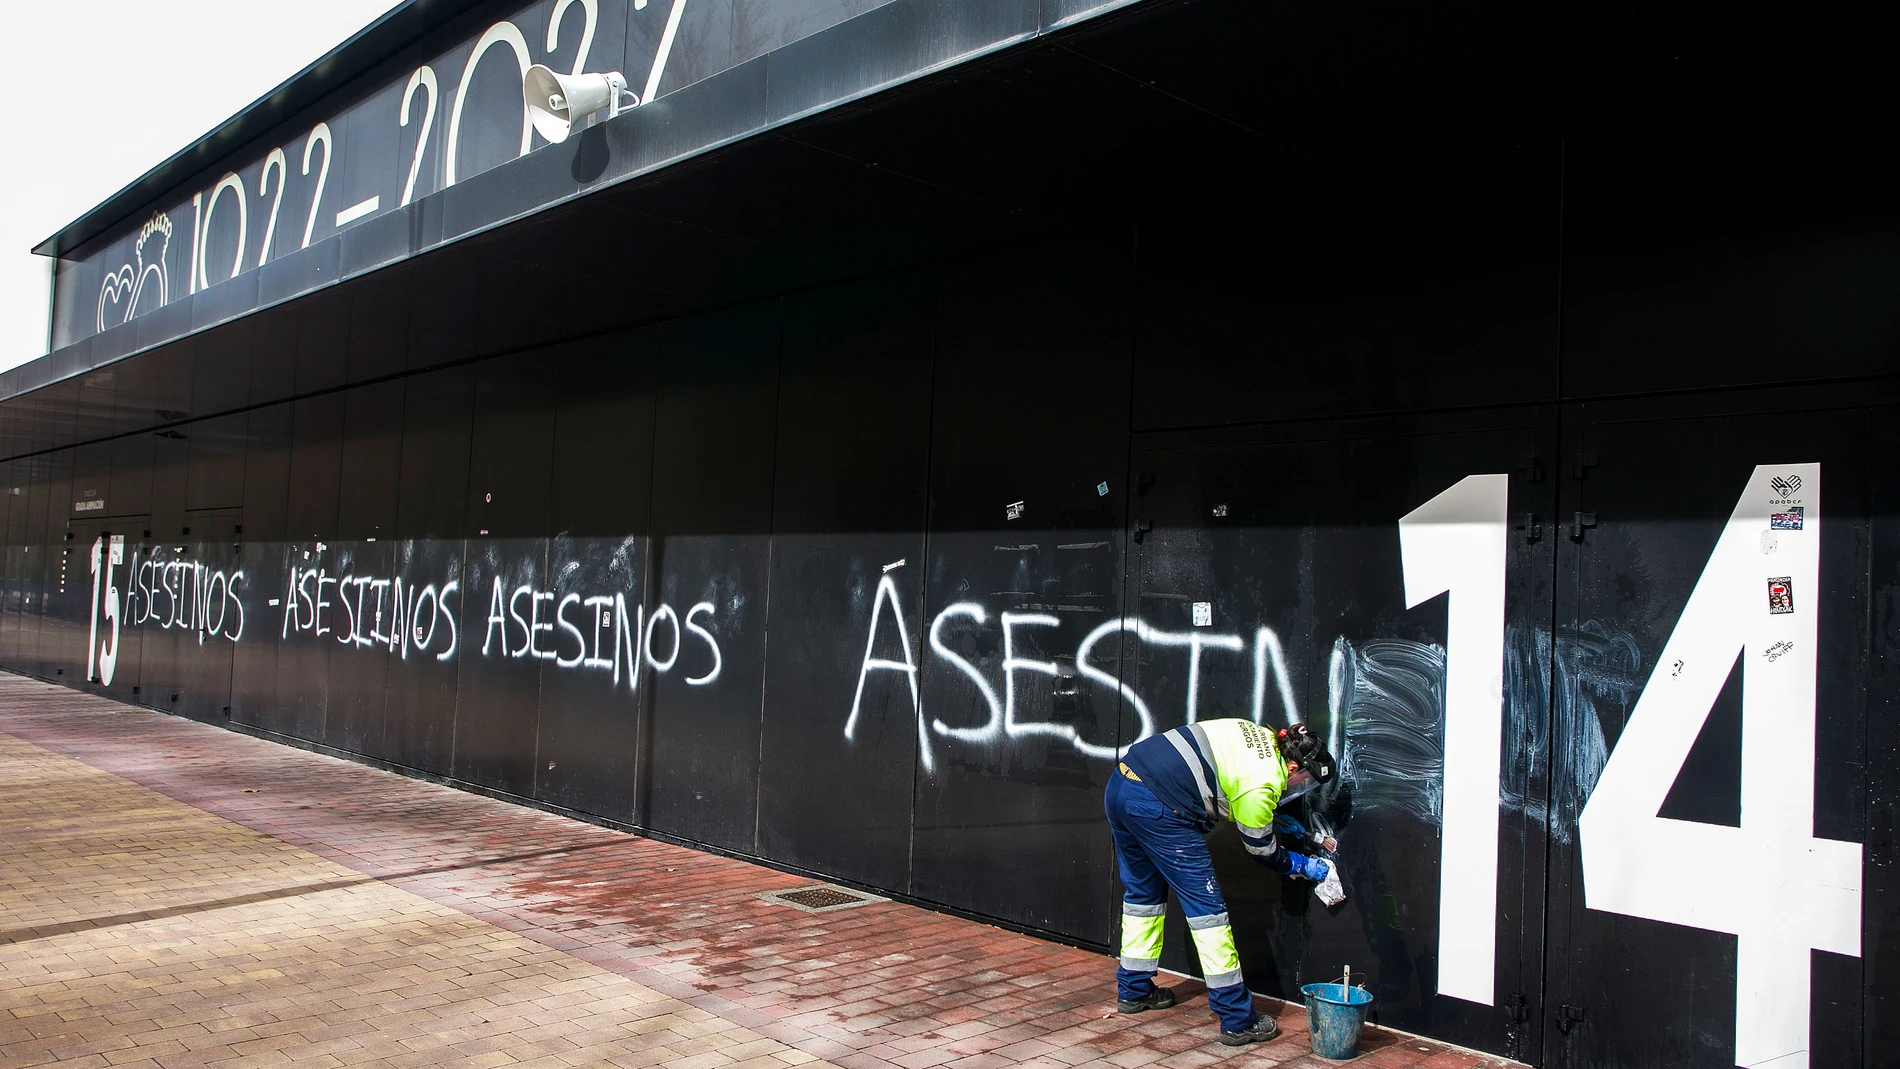 Trabajadora eliminando las pintadas de "asesinos" en la fachada del Estadio Municipal El Plantío (del Burgos CF)